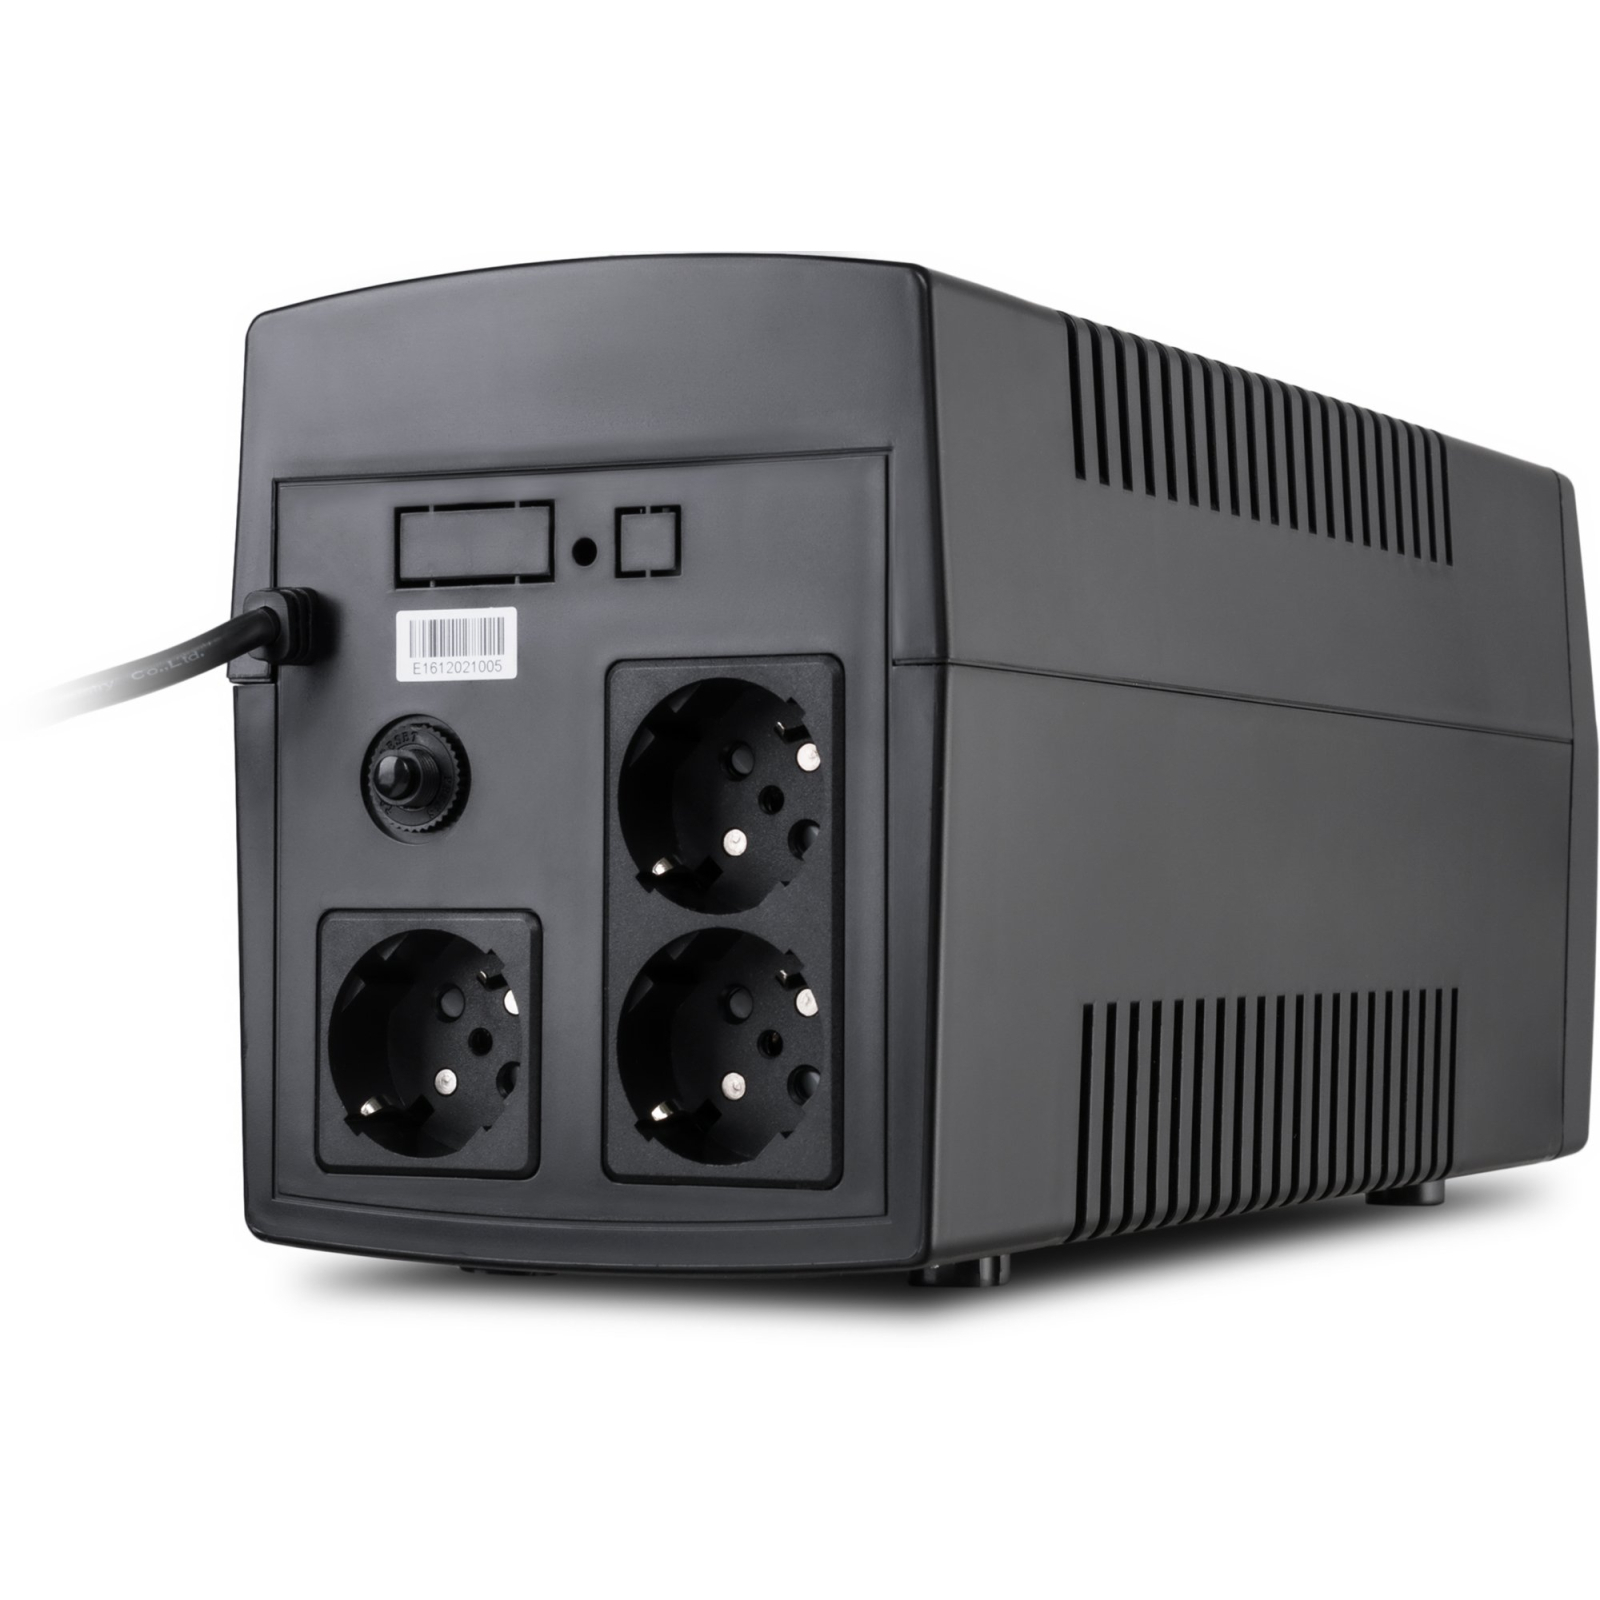 Пристрій безперебійного живлення Vinga LED 1200VA plastic case (VPE-1200P) зображення 4